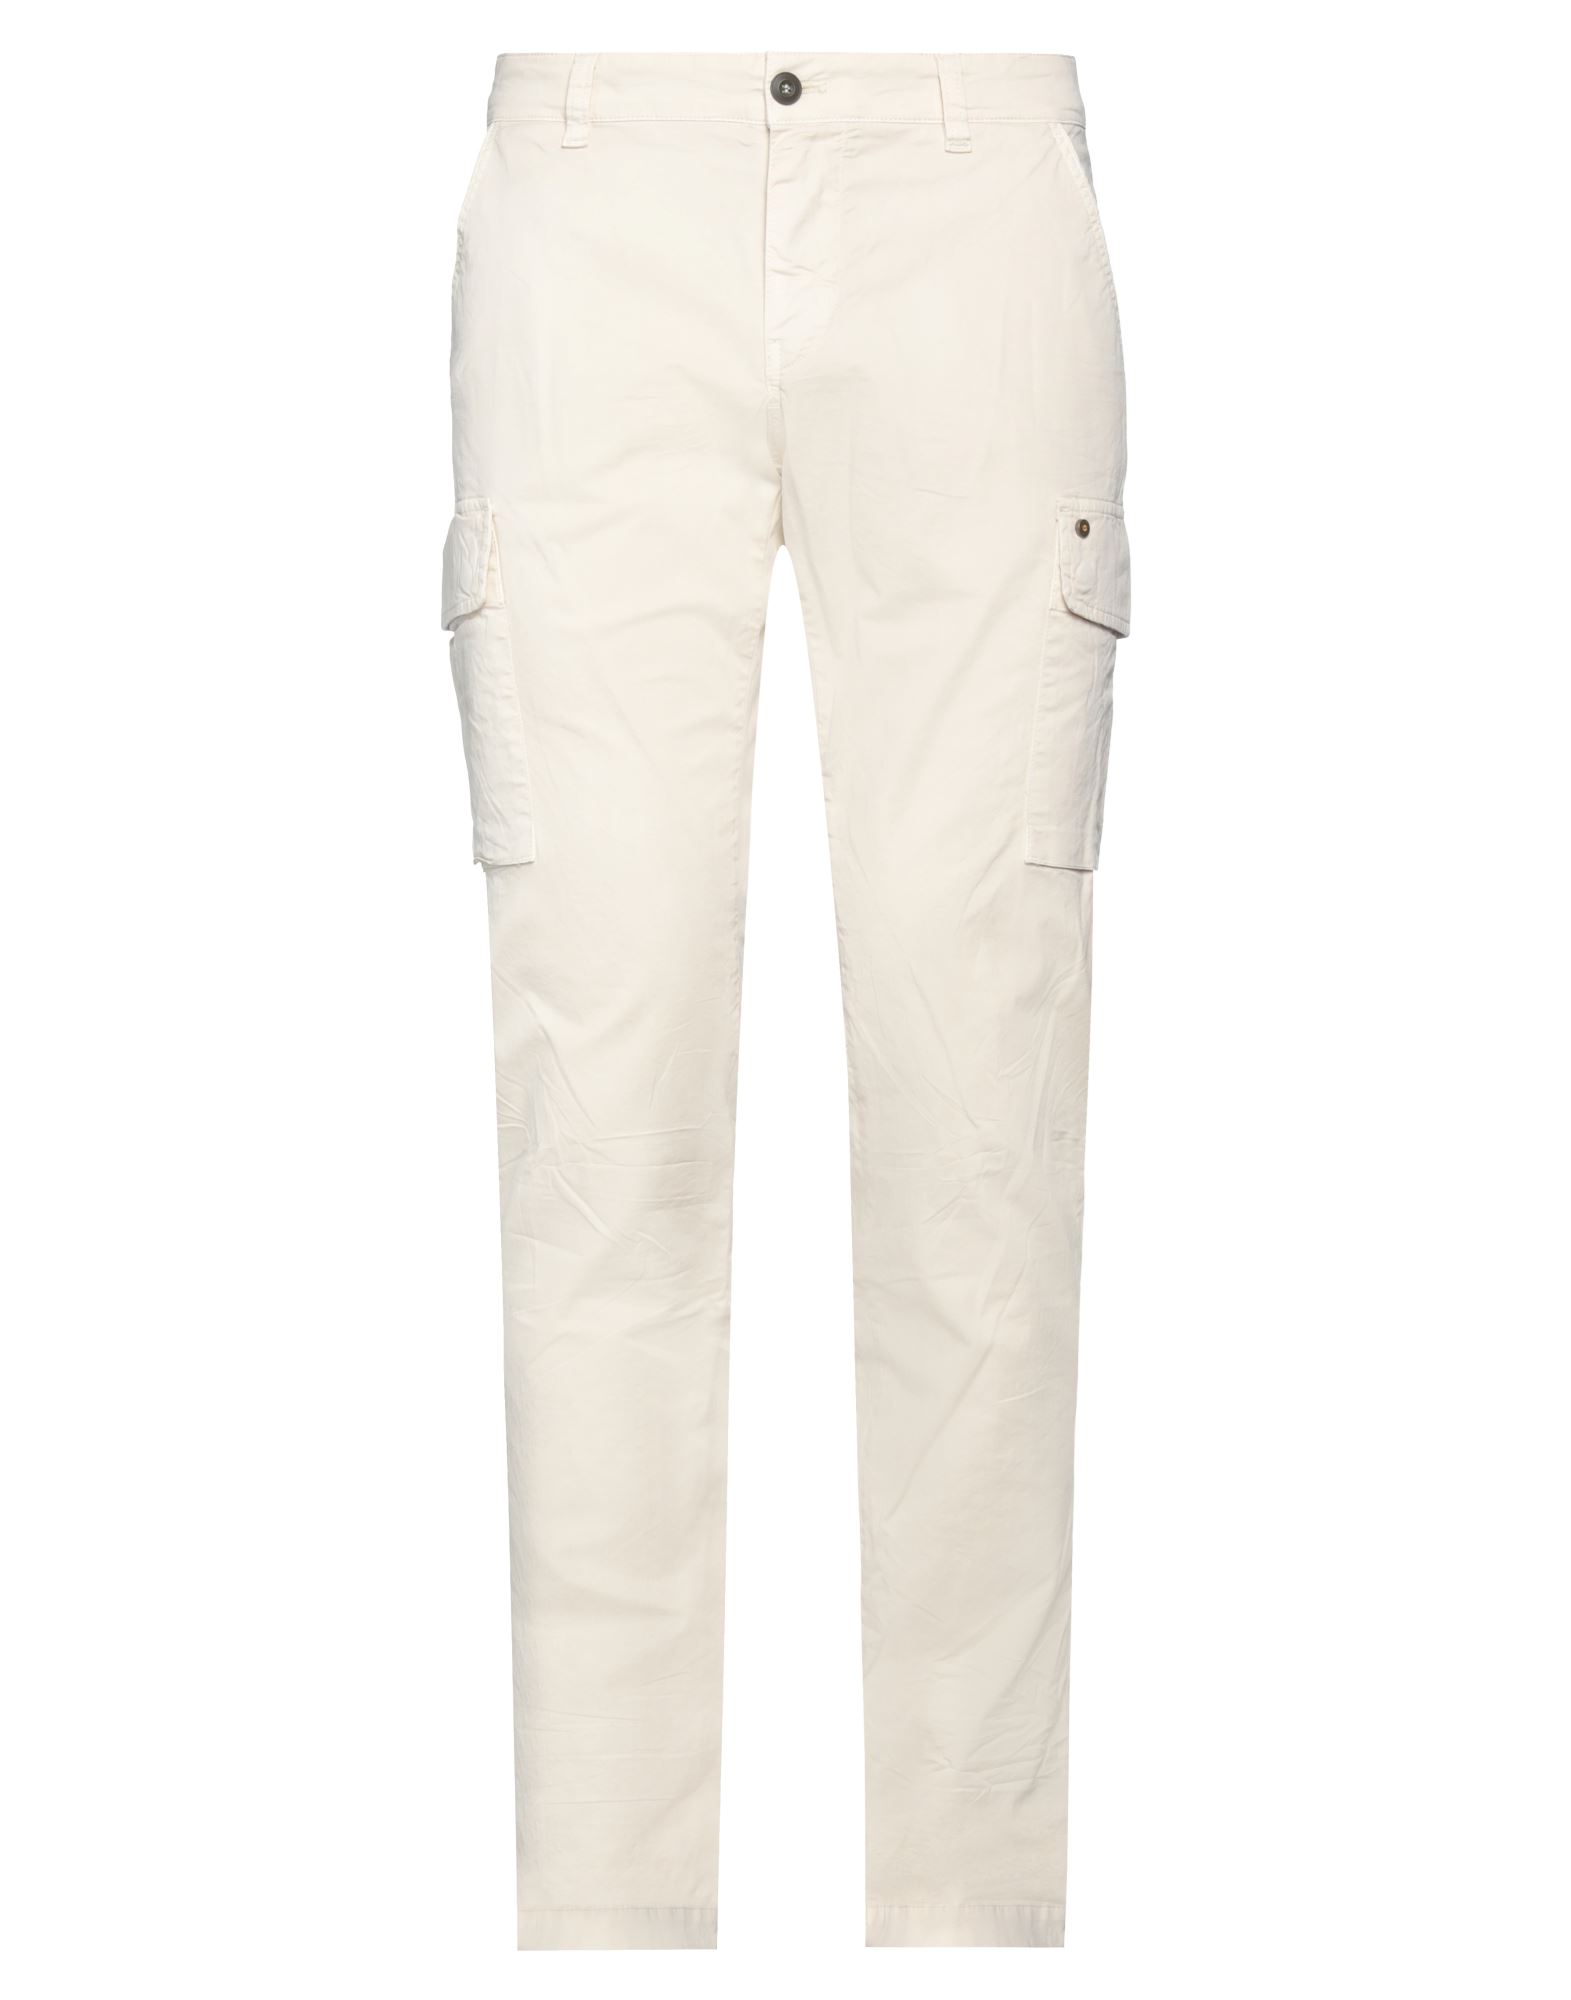 Mason's Man Pants Cream Size 40 Cotton, Elastane In White